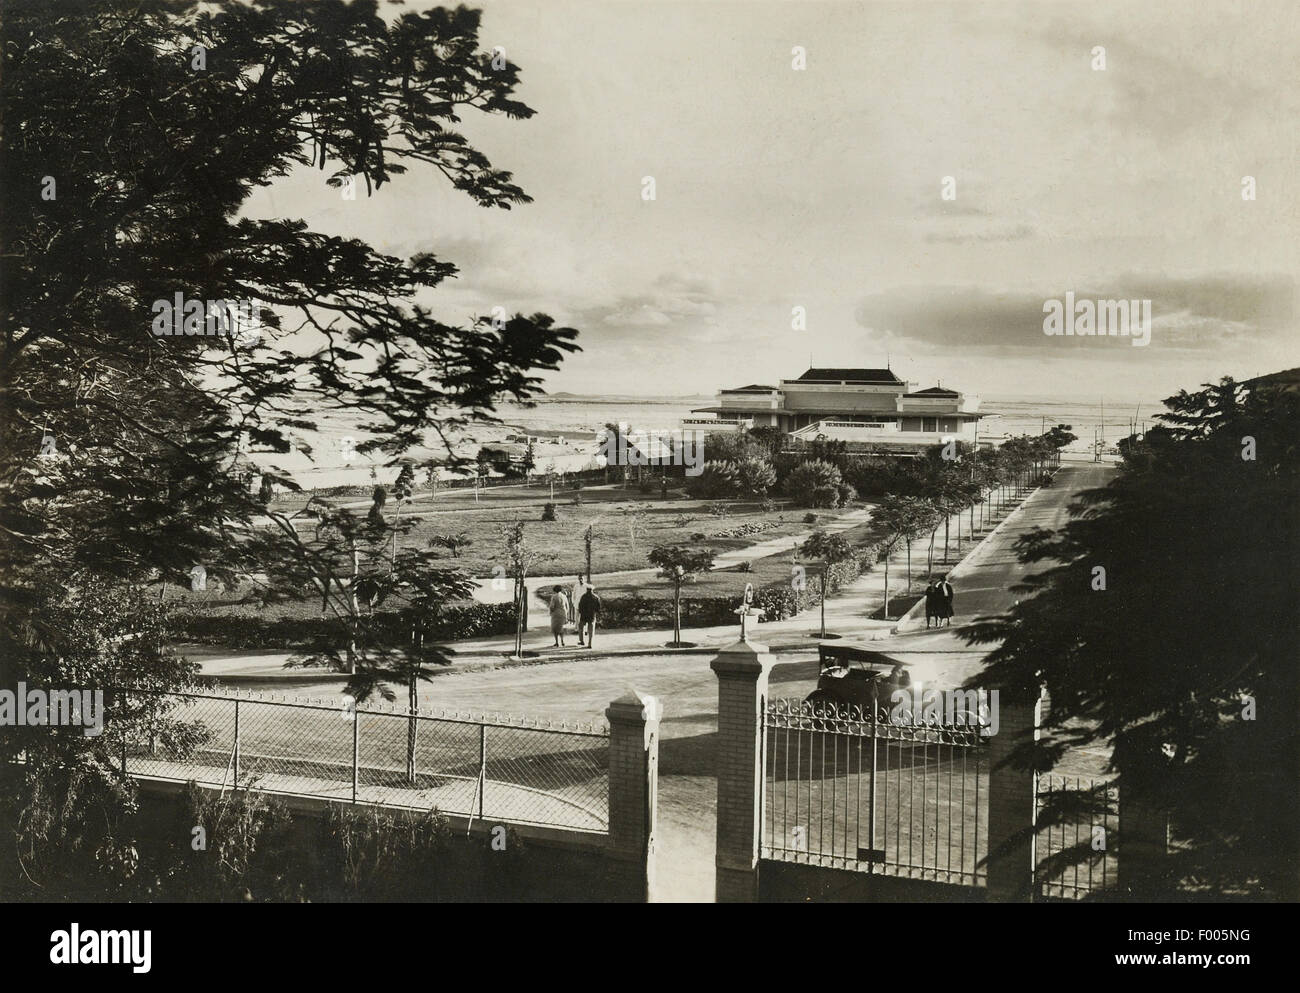 Ismailia, Ägypten - 1930er Jahren - ein altes Foto von der ruhigen Stadt Ismailia, Sitz des Suez-Kanals, wo ruhige Alleen und Villen mit üppigen Gärten, Zeuge einer illustren Vergangenheit sind als den Suez-Kanal im 19. Jahrhundert gebaut wurde.    COPYRIGHT FOTOSAMMLUNG VON BARRY IVERSON Stockfoto